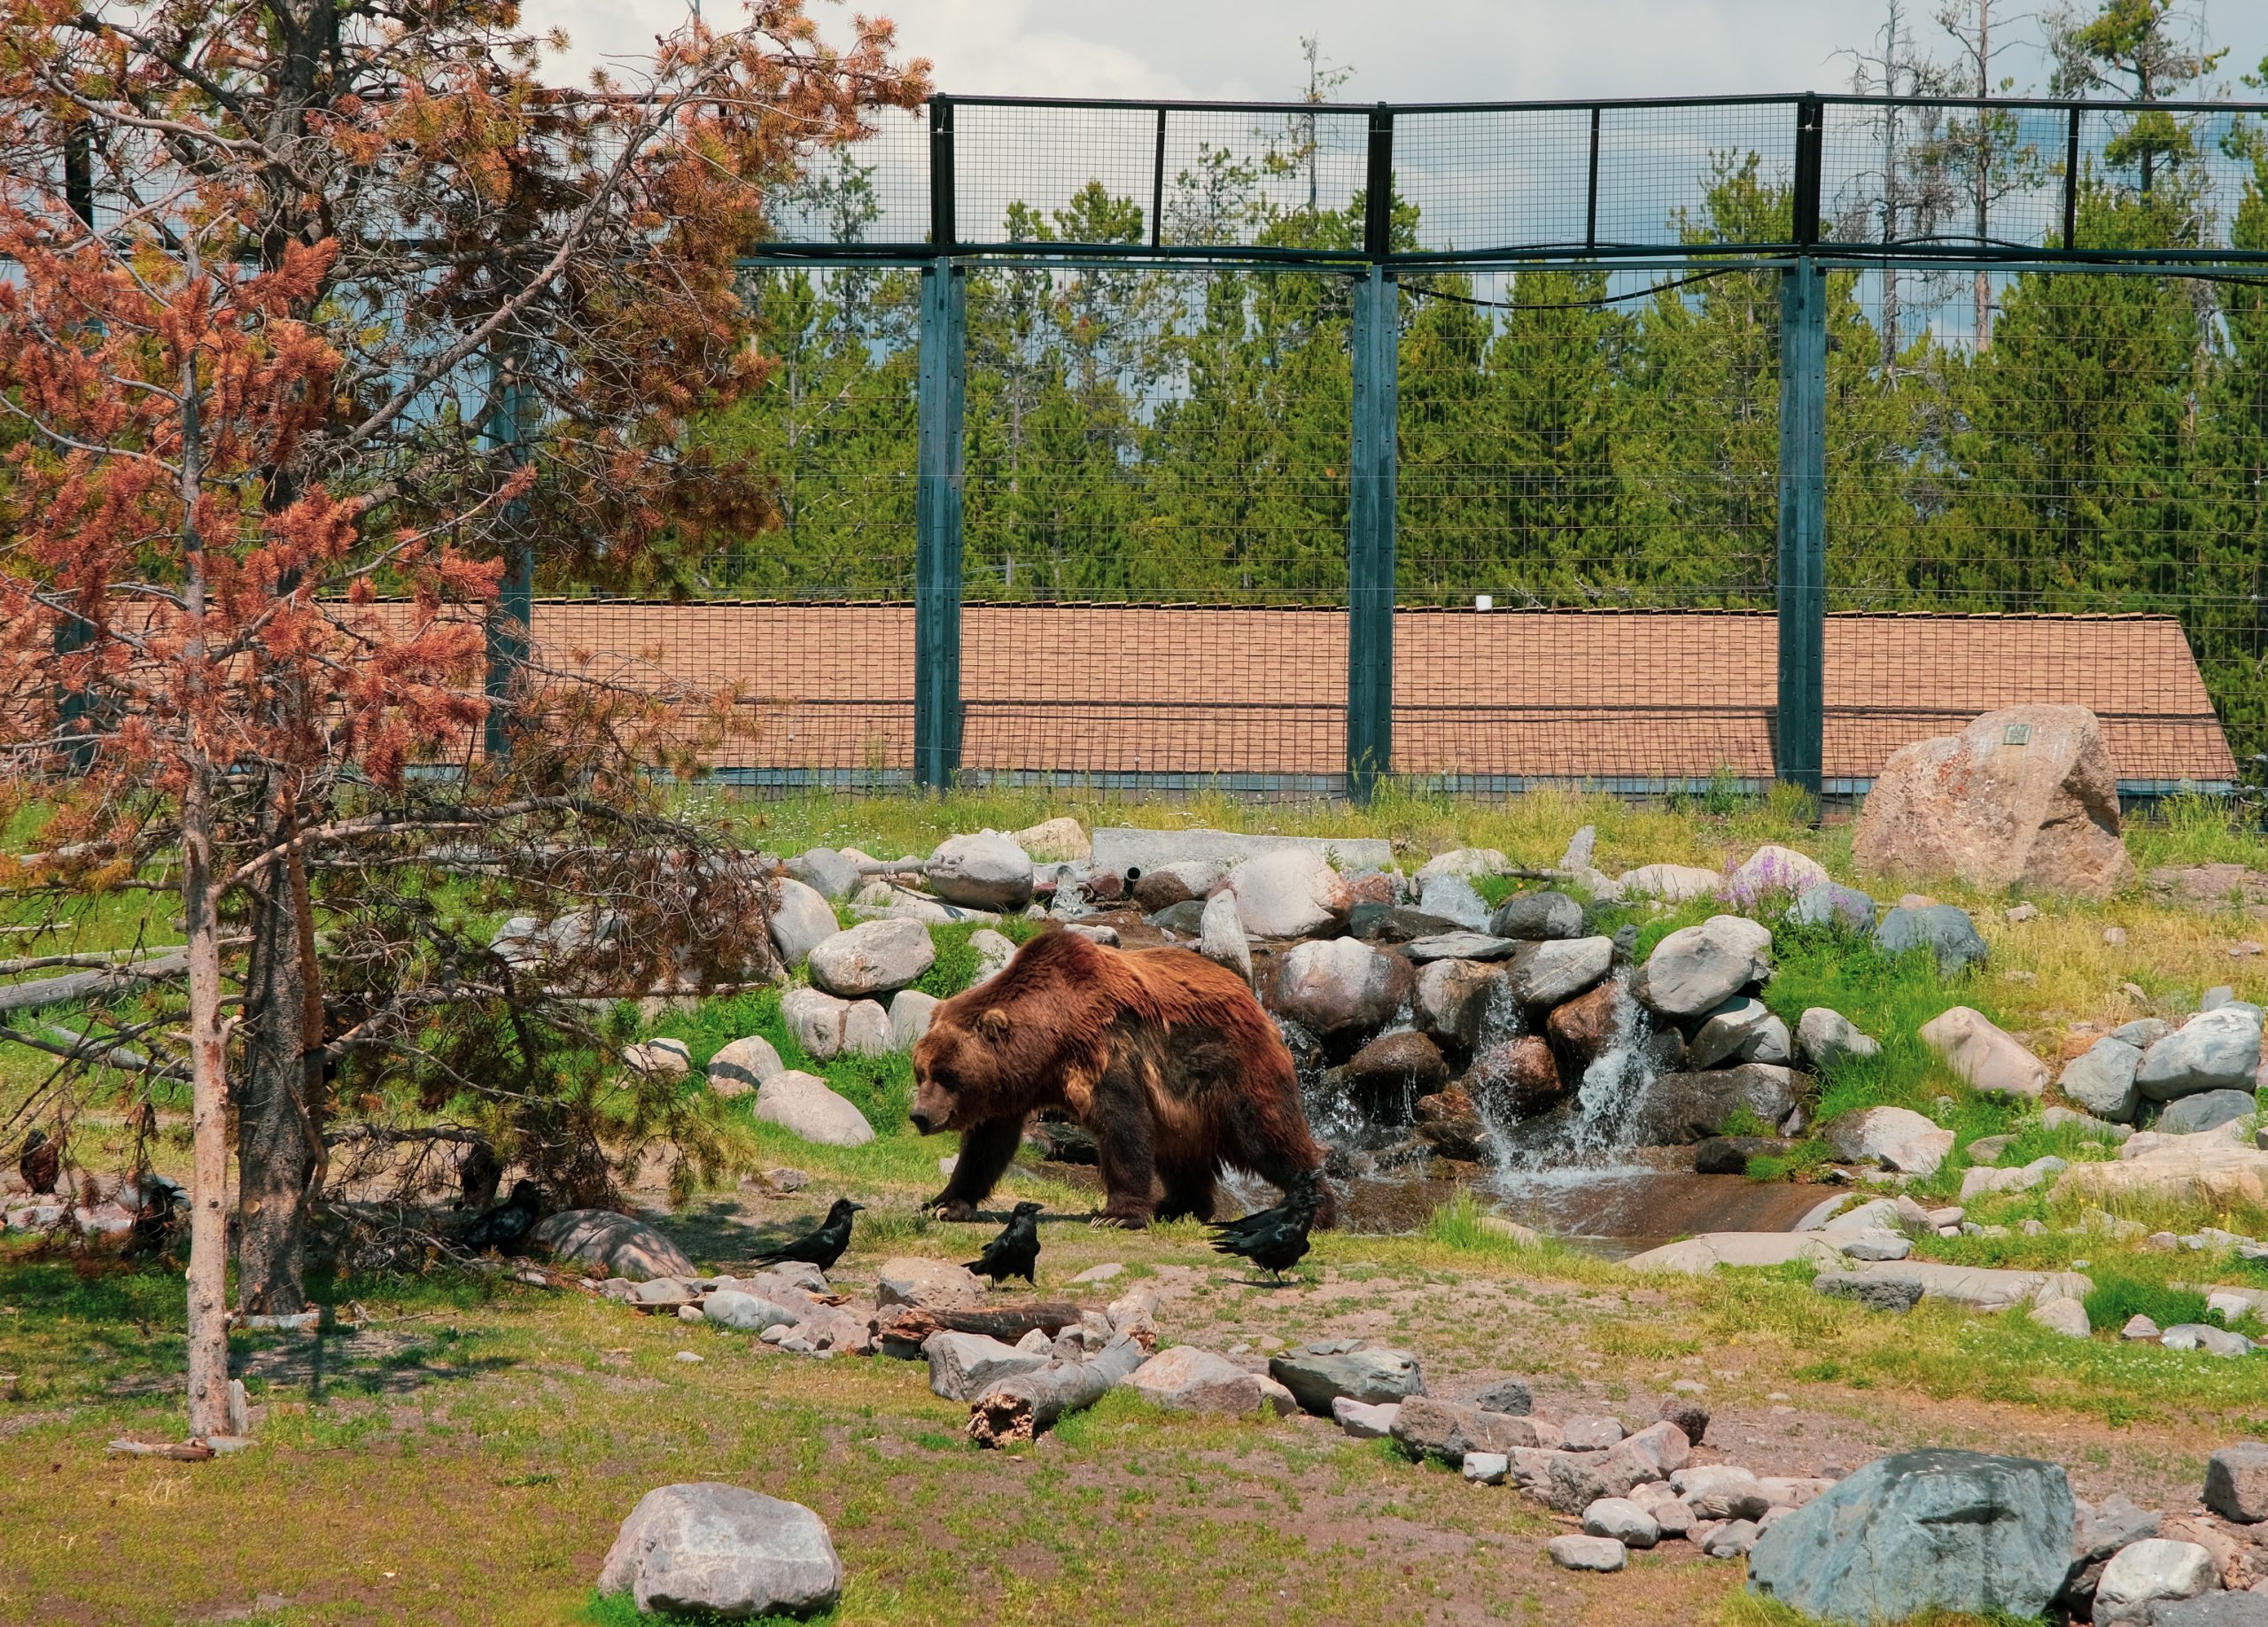 El oso grizzly más grande del Grizzly and Wolf discovery Center, un grueso 475 kilos de fuerza muscular